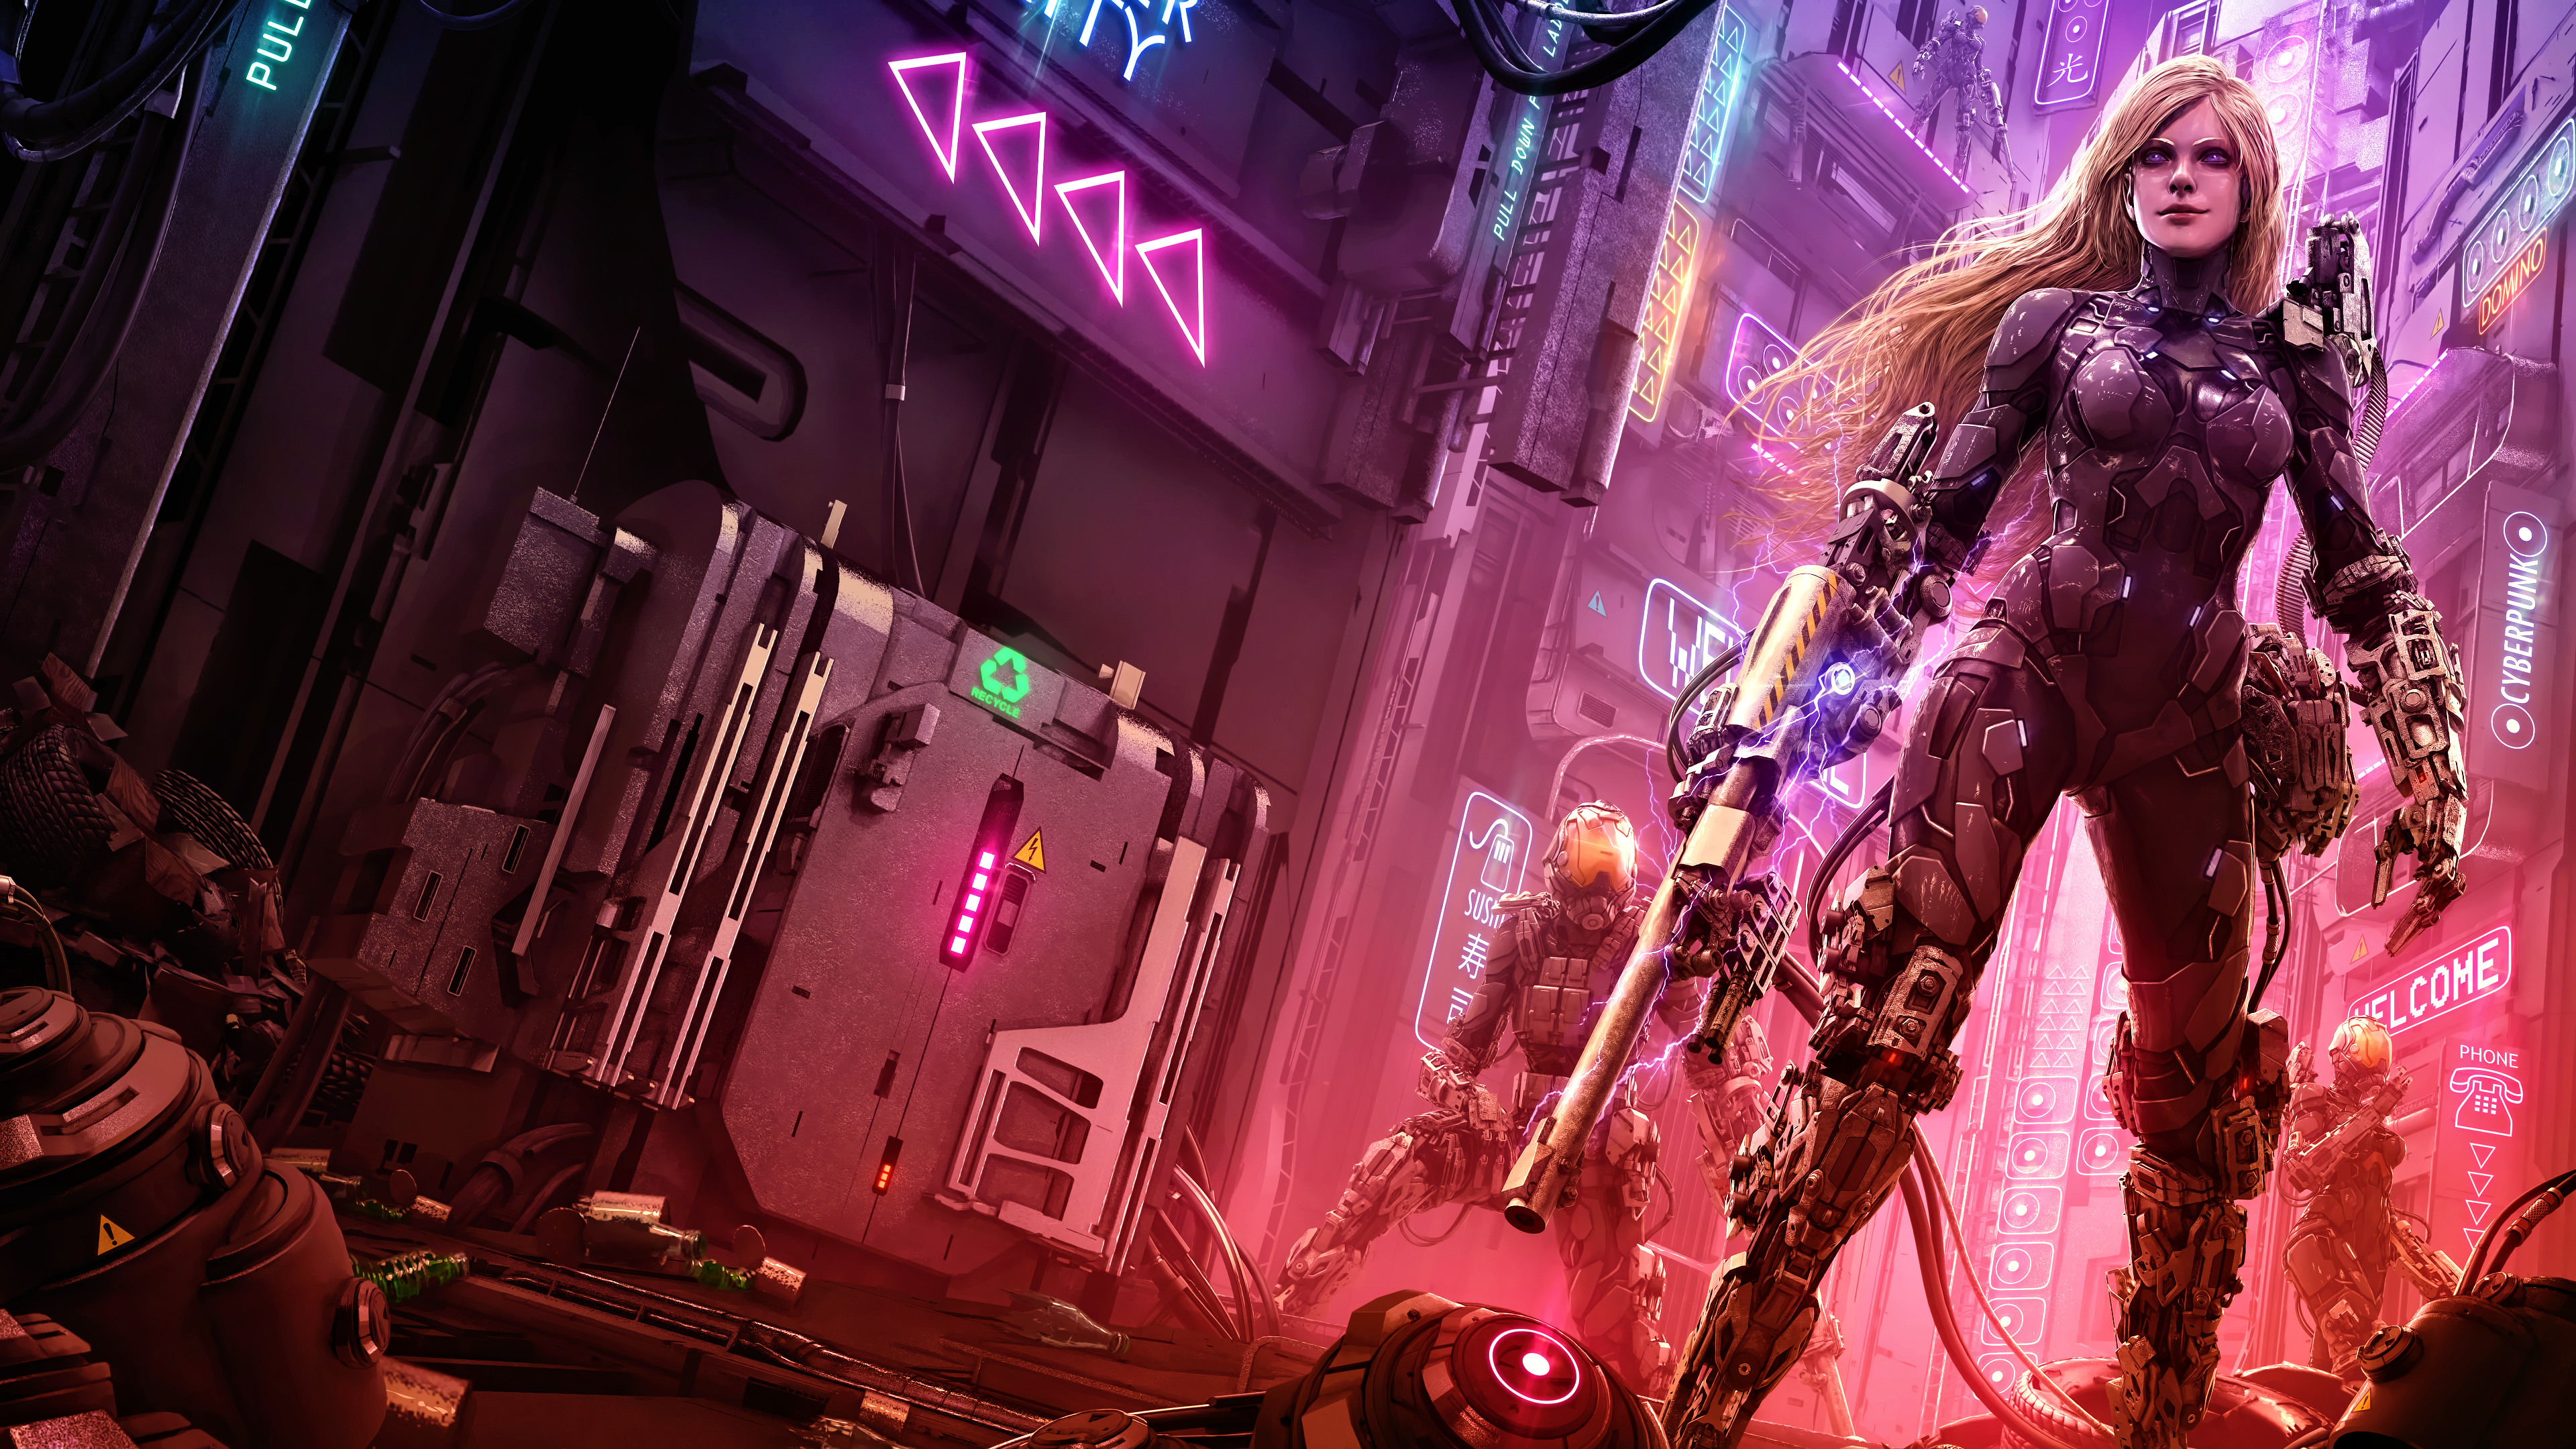 Cyberpunk Girl Beast Wallpapers